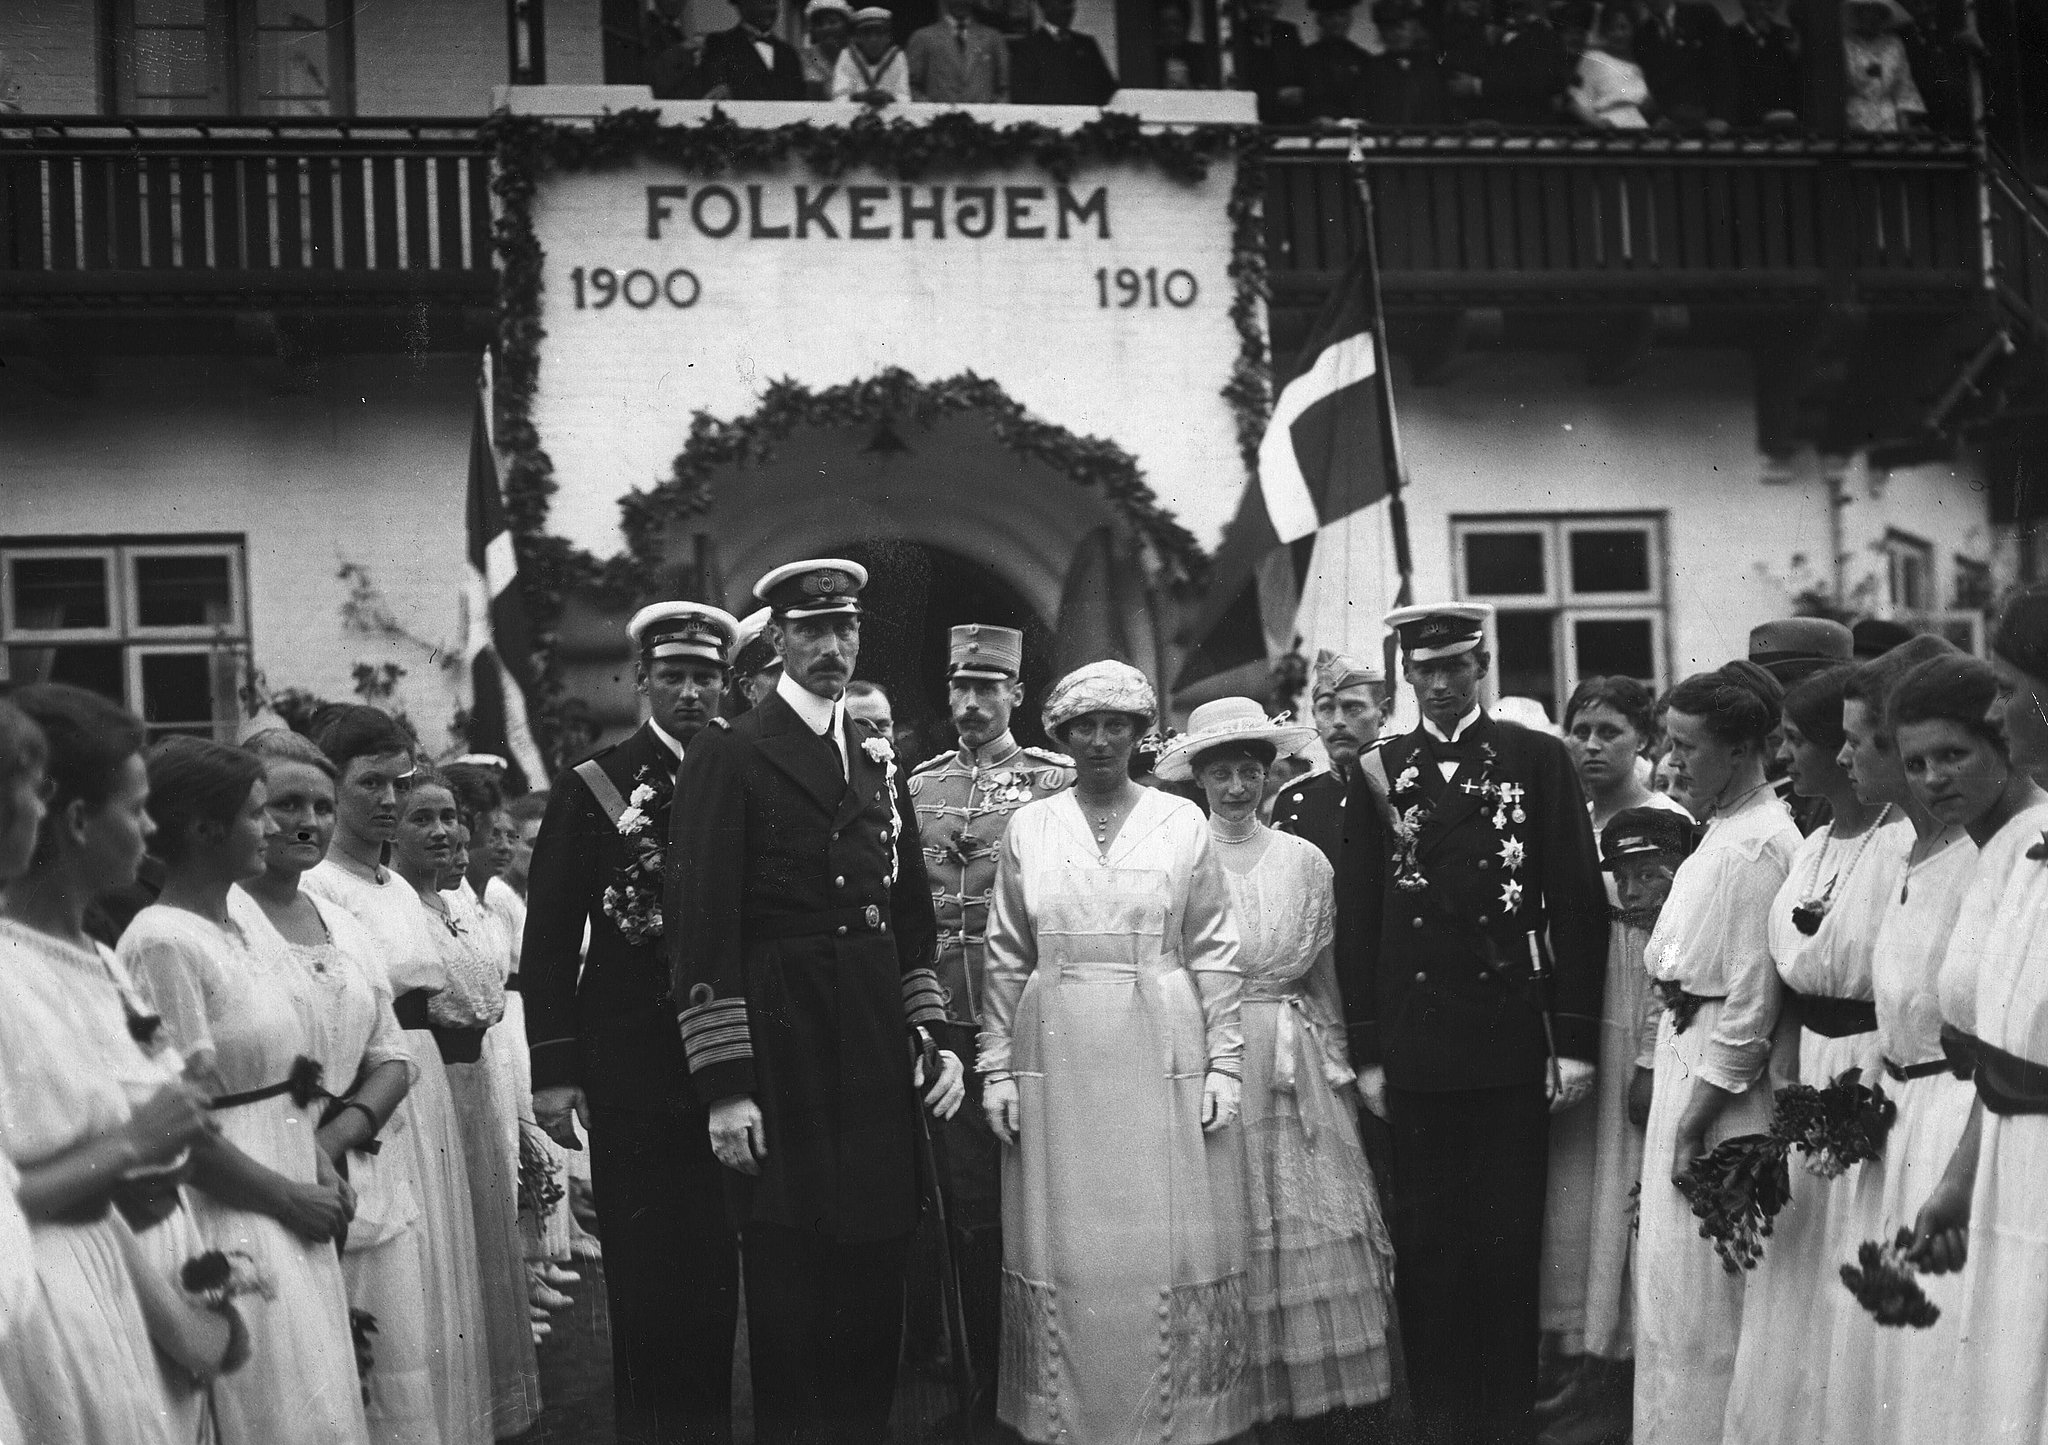 El rey Christian 10., la reina Alexandrine, el príncipe heredero Frederik y el príncipe heredero Knud frente a Folkehjem en Aabenraa el 10 de julio de 1920.